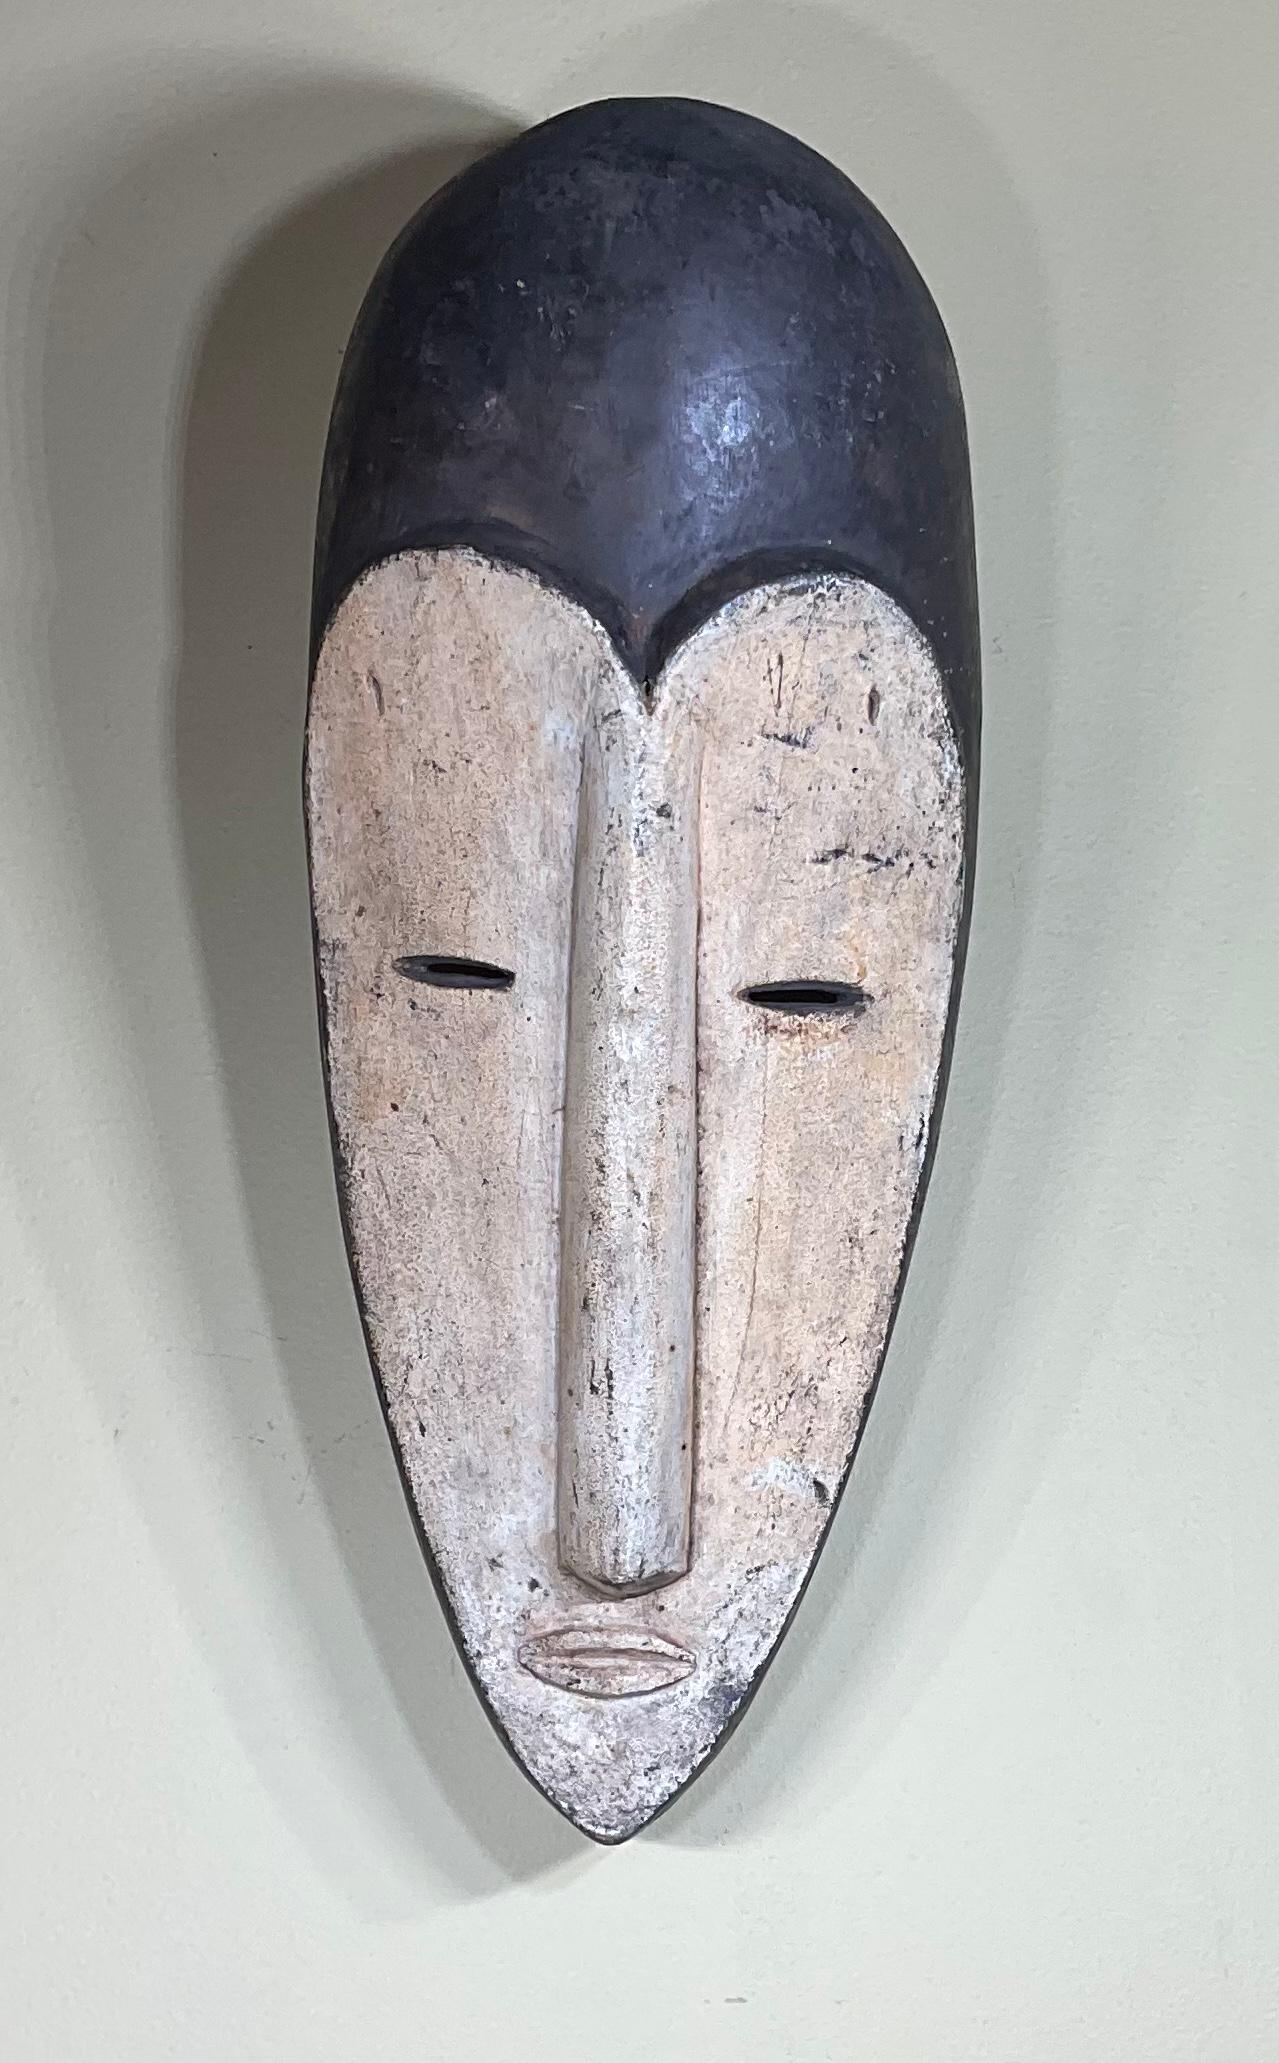 Außergewöhnliche, handgeschnitzte und handbemalte Holzmaske aus einem Stück Holz, die zu dekorativen Zwecken angefertigt wurde. Ein sehr faszinierendes und geheimnisvolles Gesicht.
Die Maske ist auf einem speziell angefertigten Sockel aus Lucite